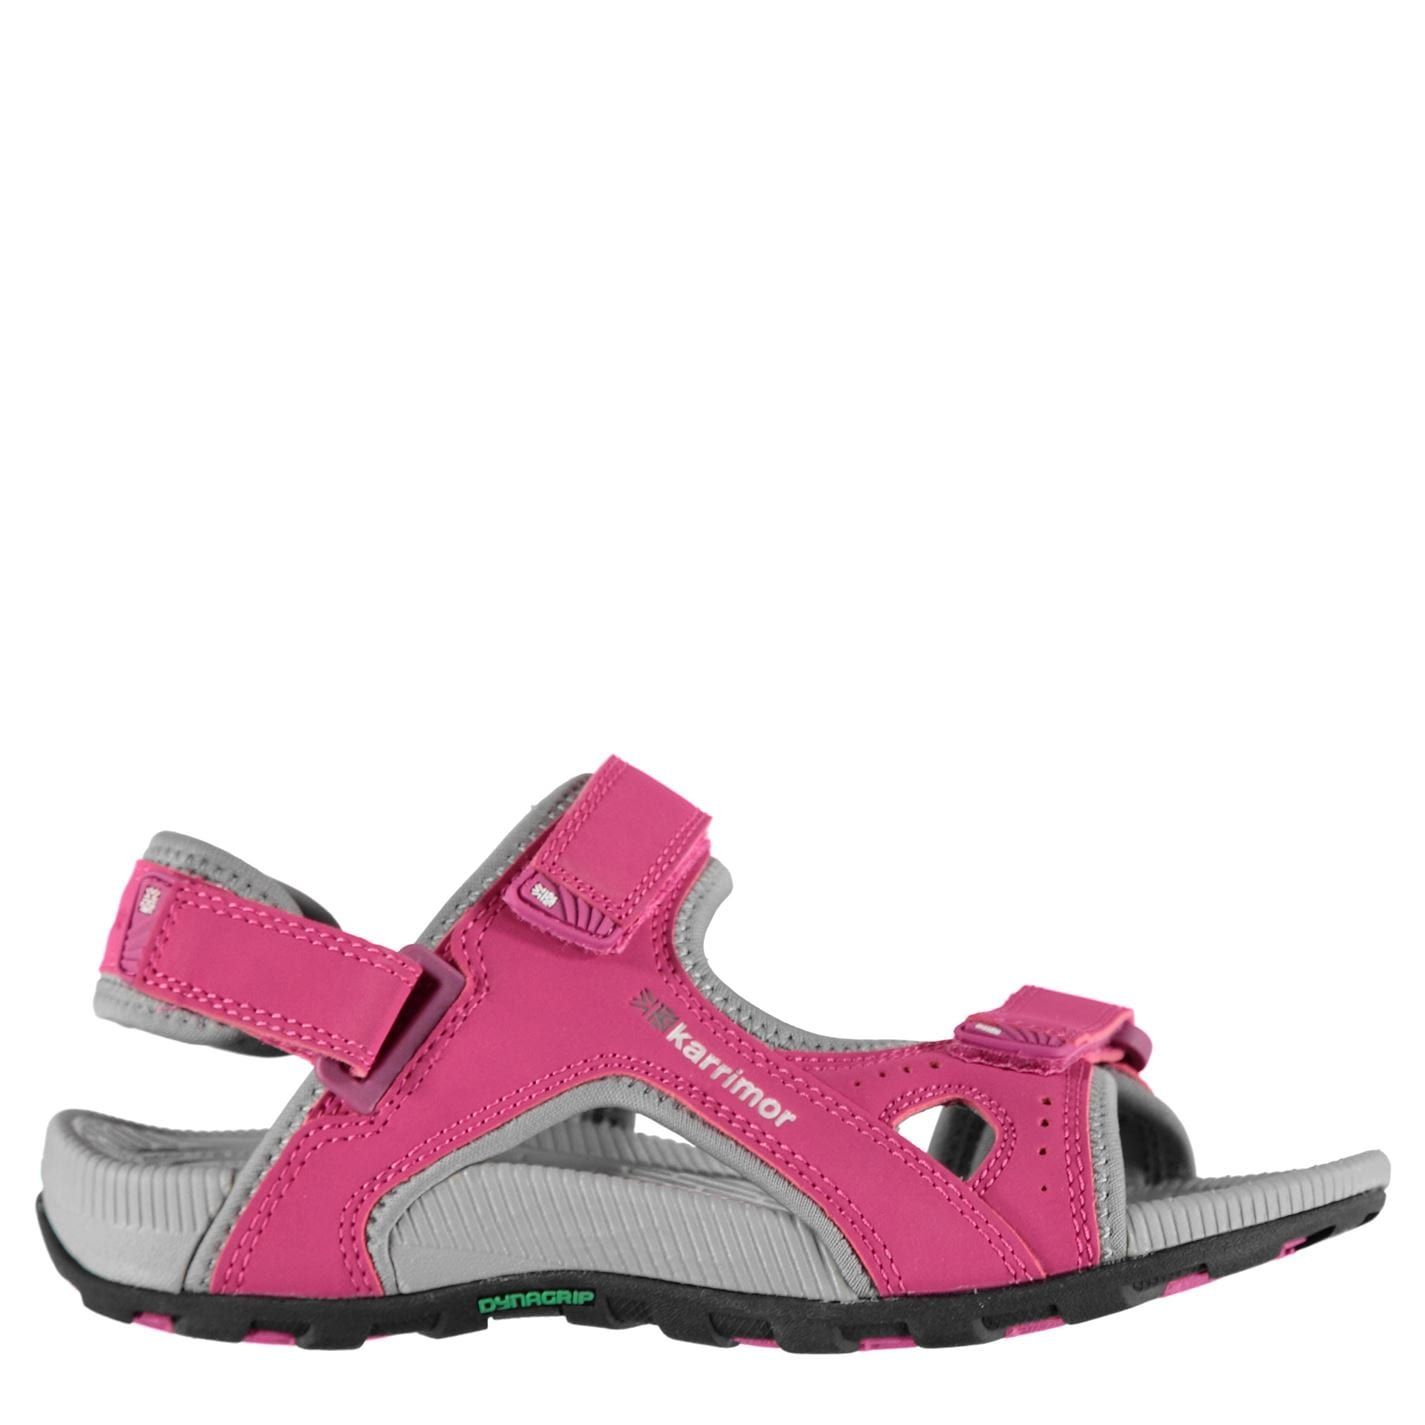 Karrimor Kids Antibes Junior Sandals Shoes Casual Summer Hook and Loop